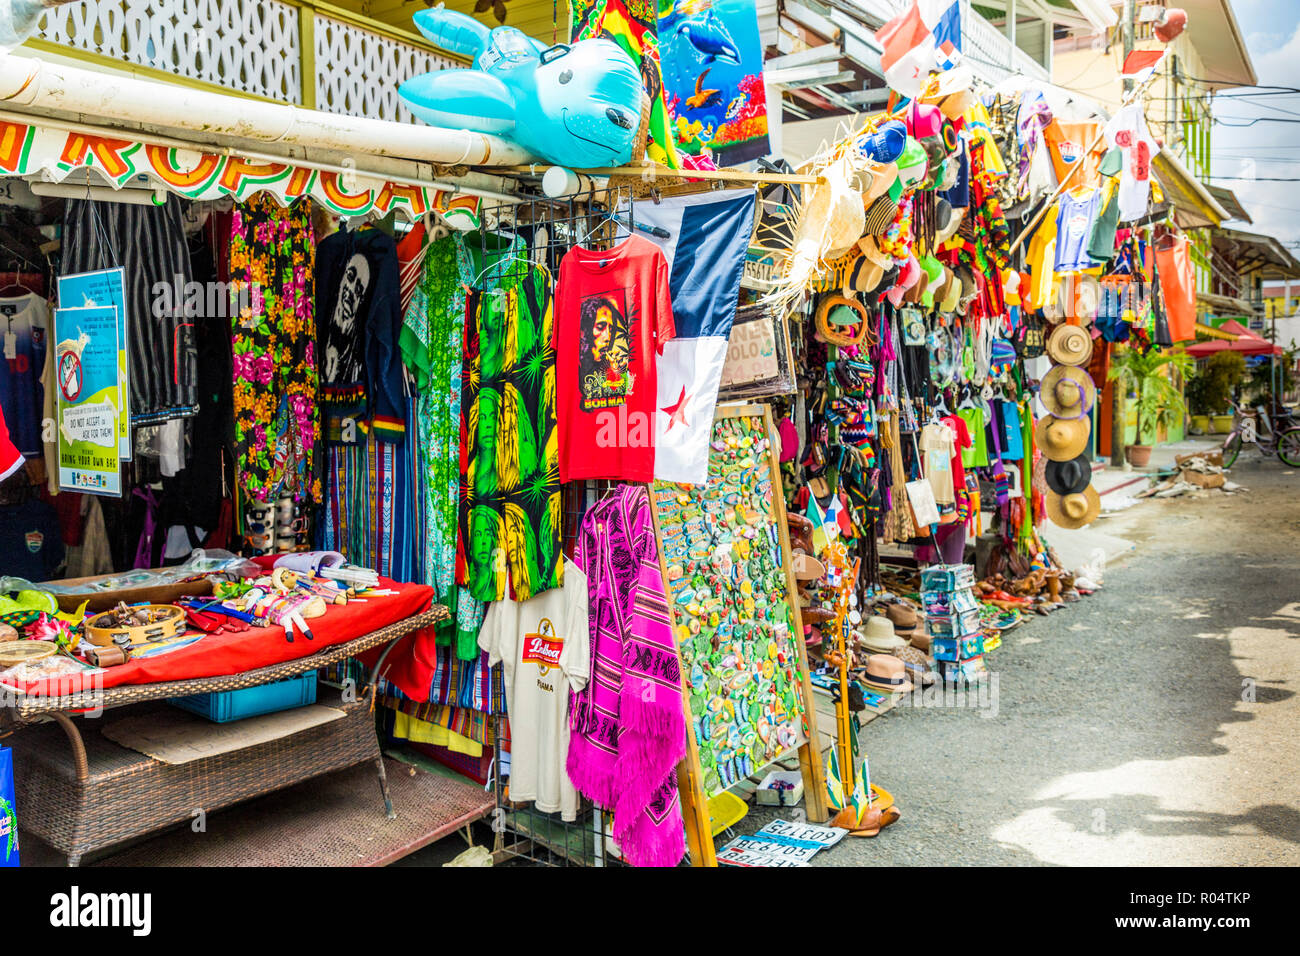 A colourful souvenir stall in Bocas del Toro, Panama, Central America Stock Photo